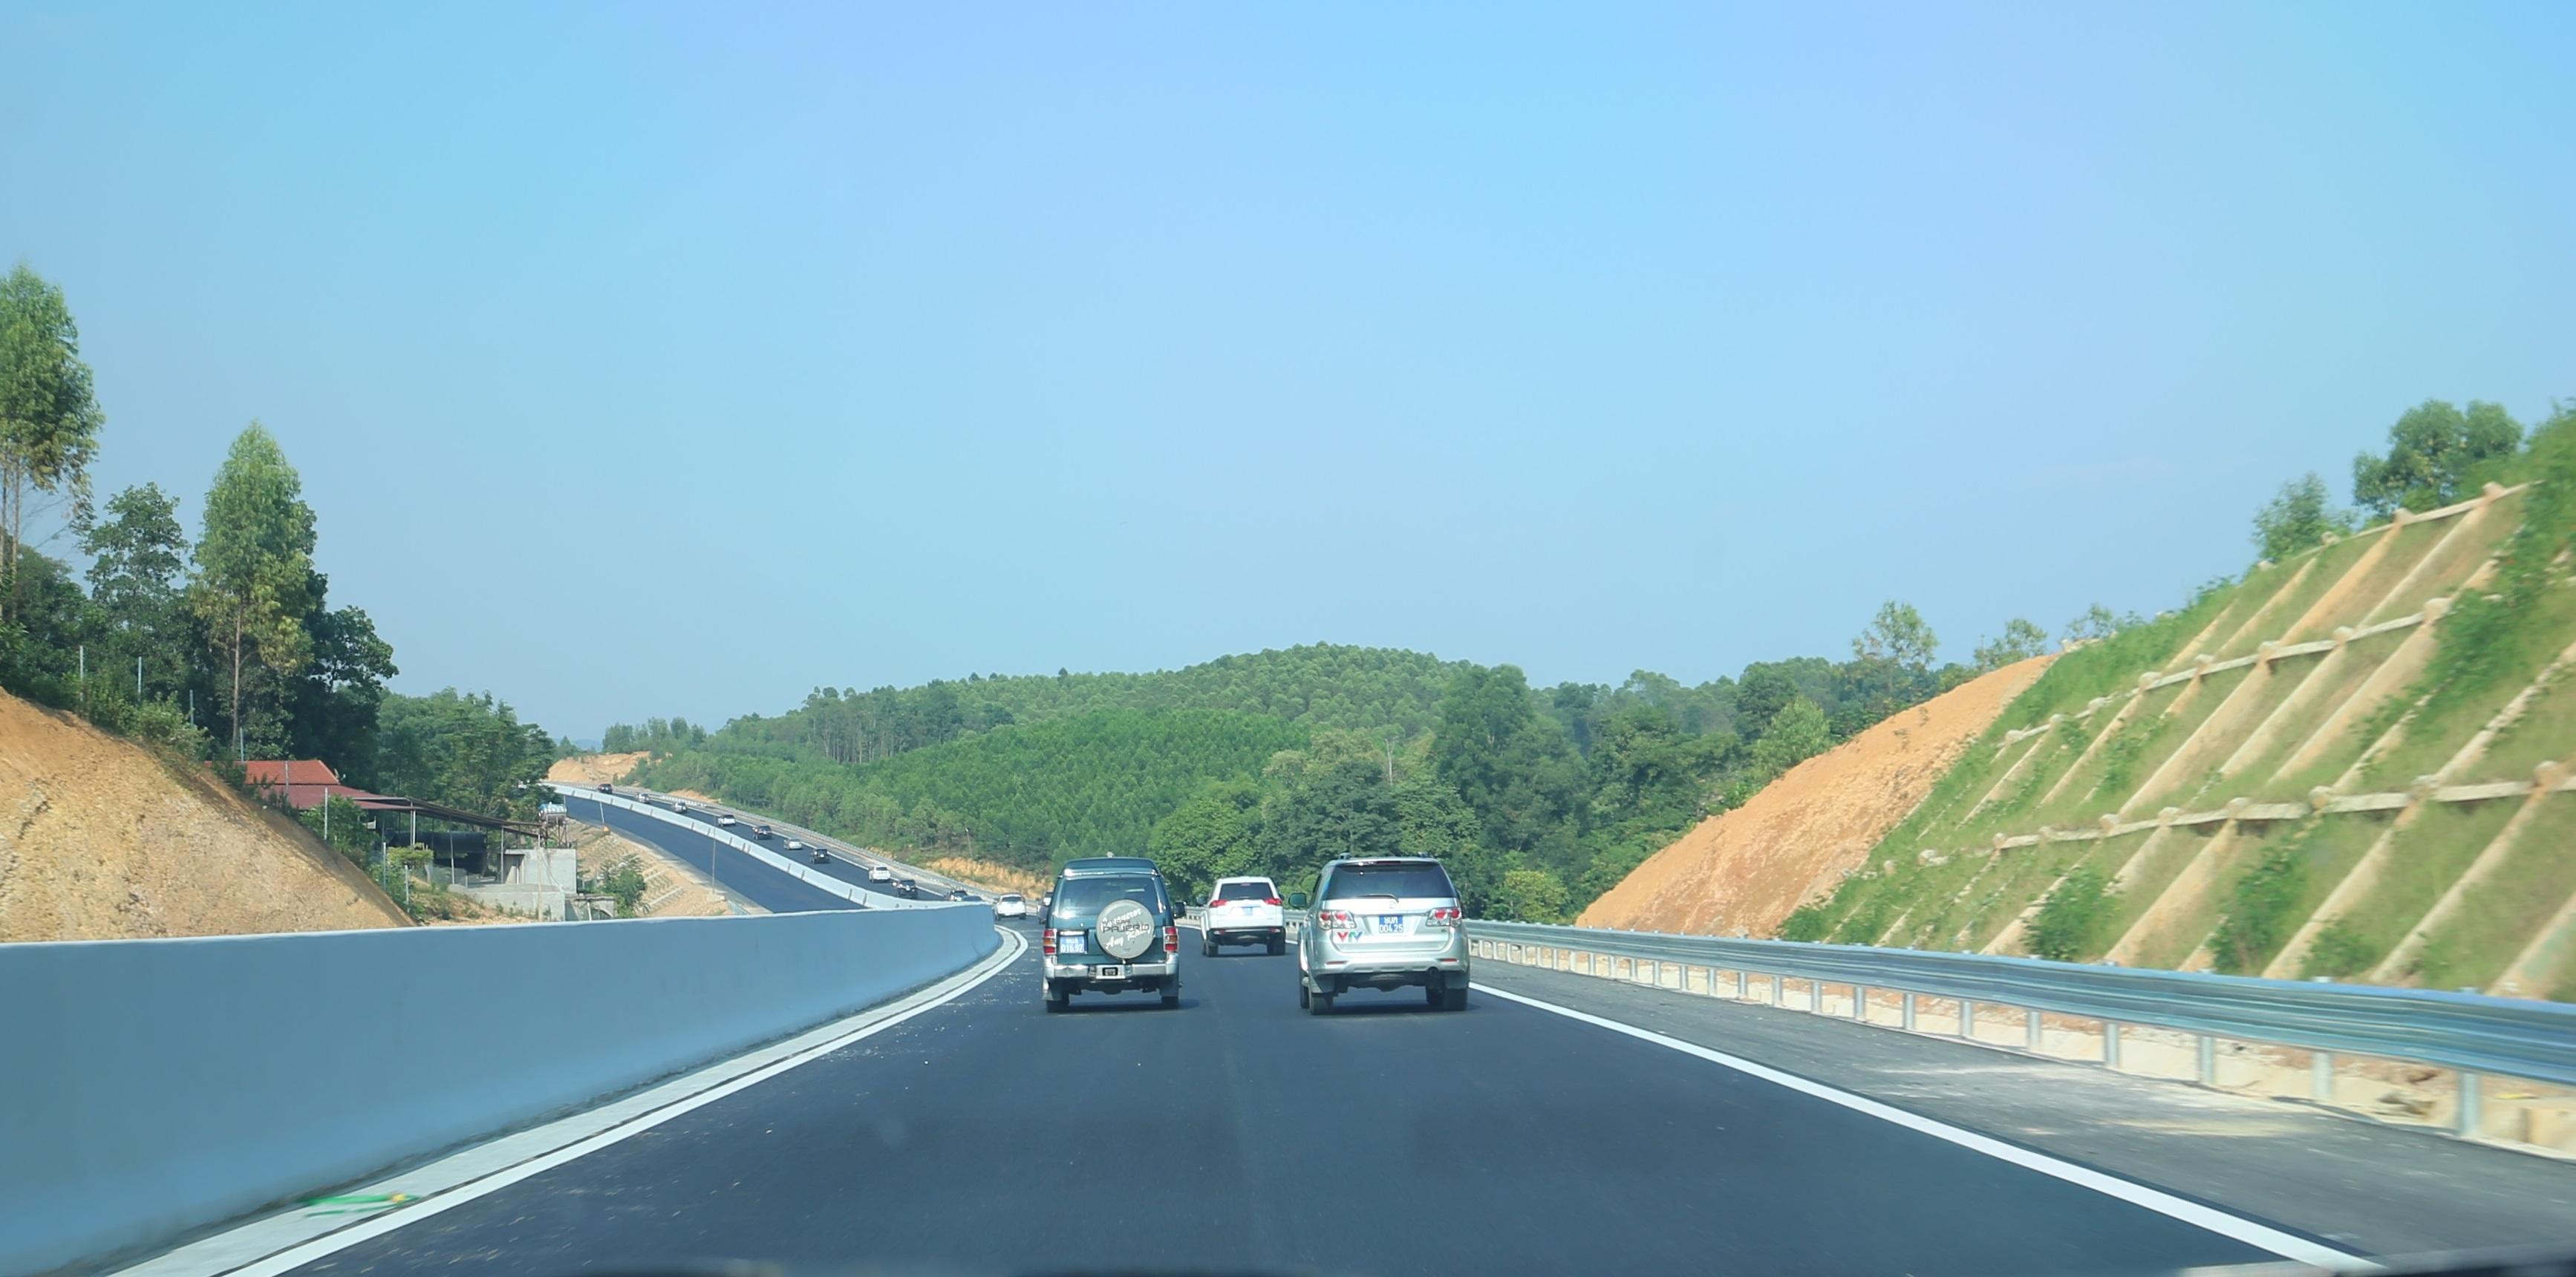 Cao tốc Bắc Giang - Lạng Sơn: Nhà đầu tư đề xuất miễn phí lưu thông gần 1 tháng